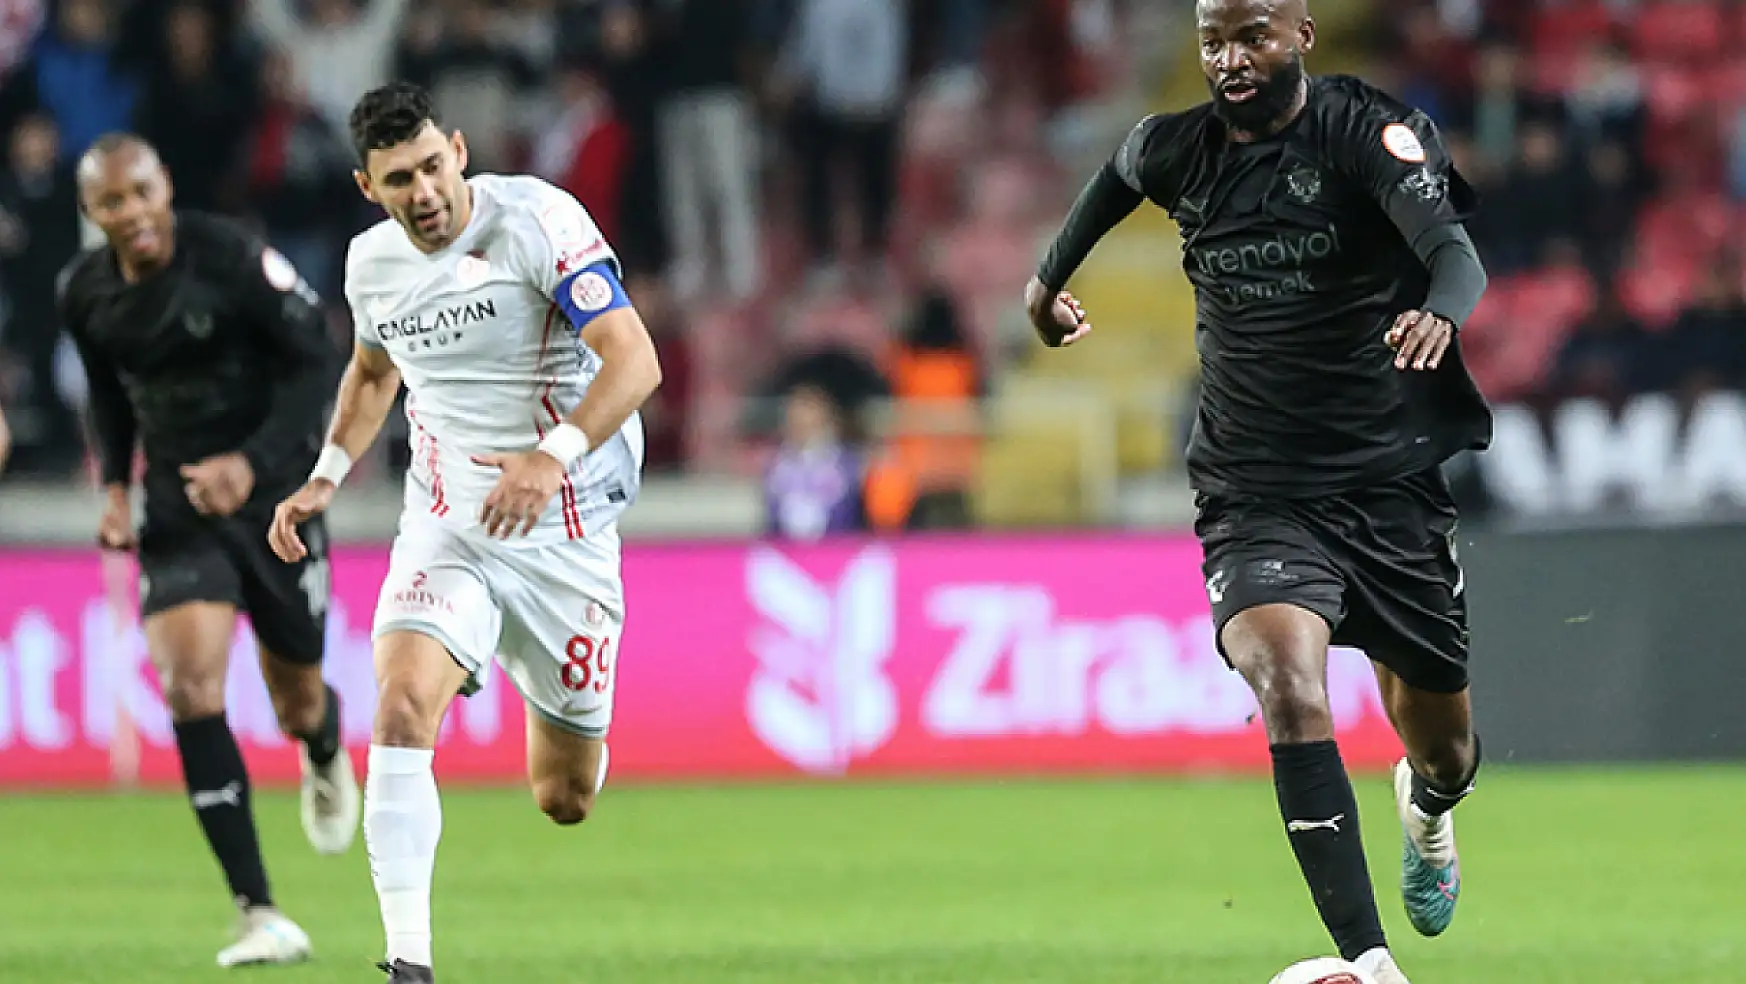 Süper Ligin 14'üncü hafta açılış maçında gol yağmuru: Puanlar paylaşıldı!